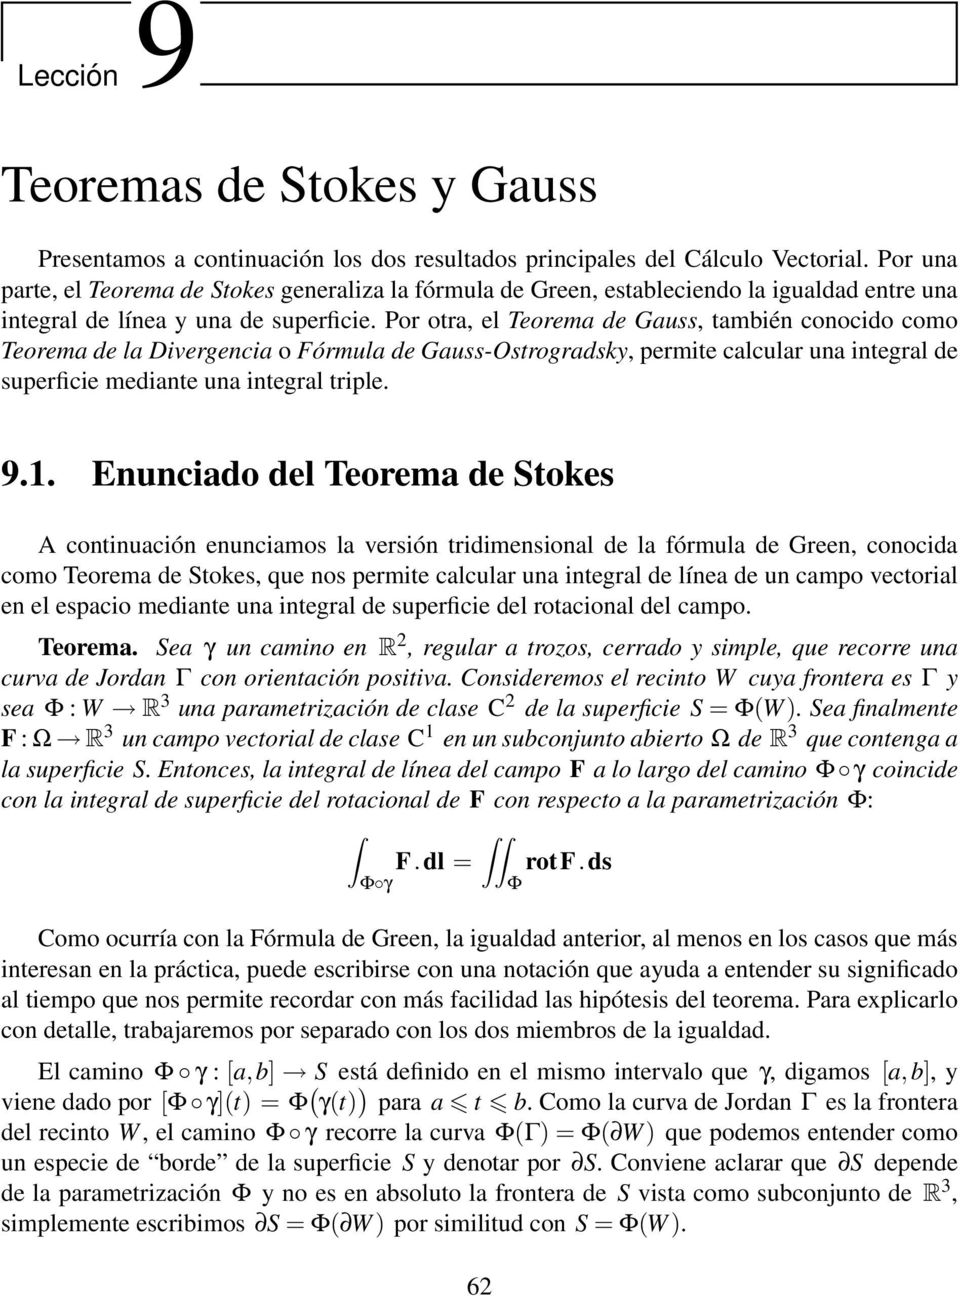 Por otra, el Teorema de Gauss, también conocido como Teorema de la Divergencia o Fórmula de Gauss-Ostrogradsky, permite calcular una integral de superficie mediante una integral triple. 9.1.